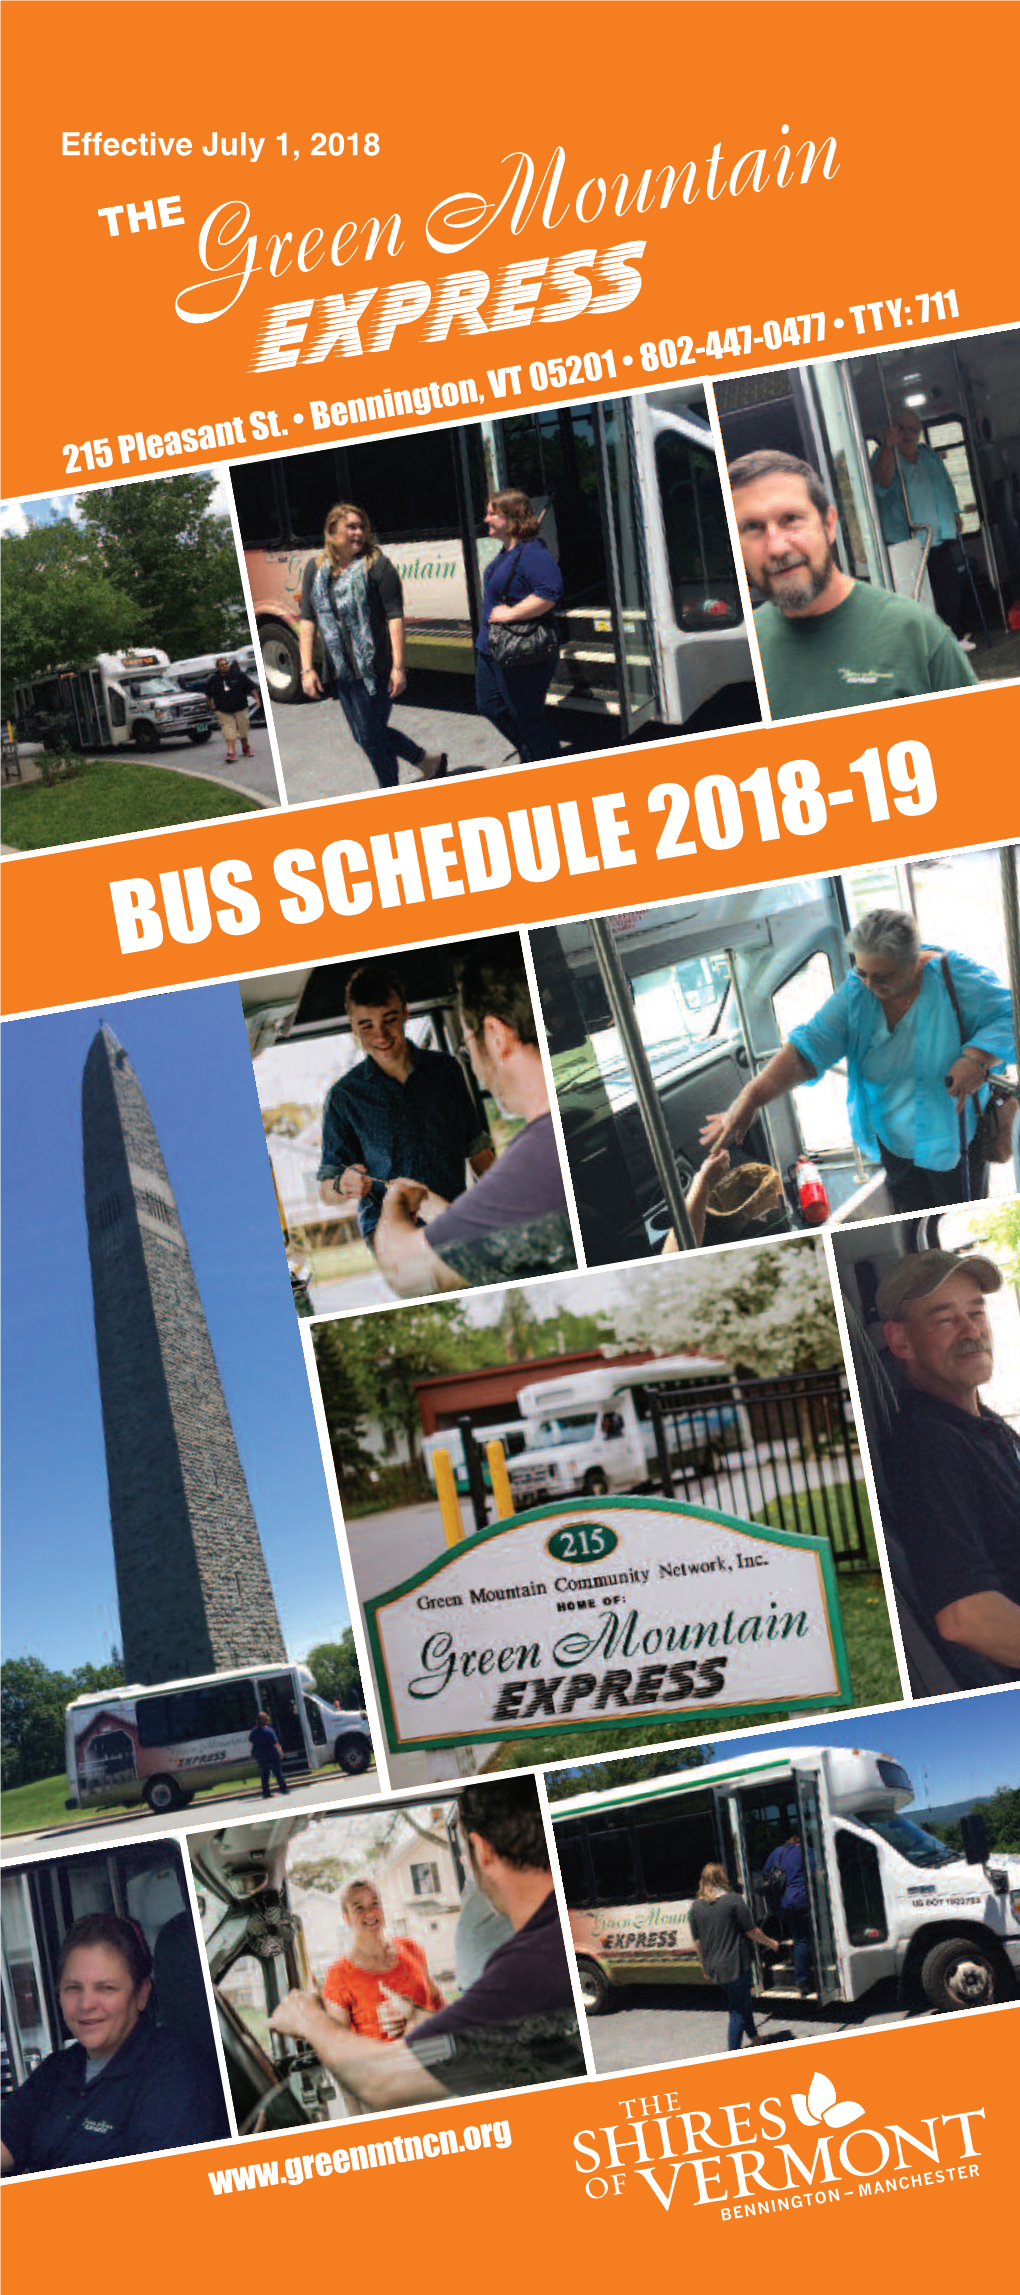 Busschedule2018-19